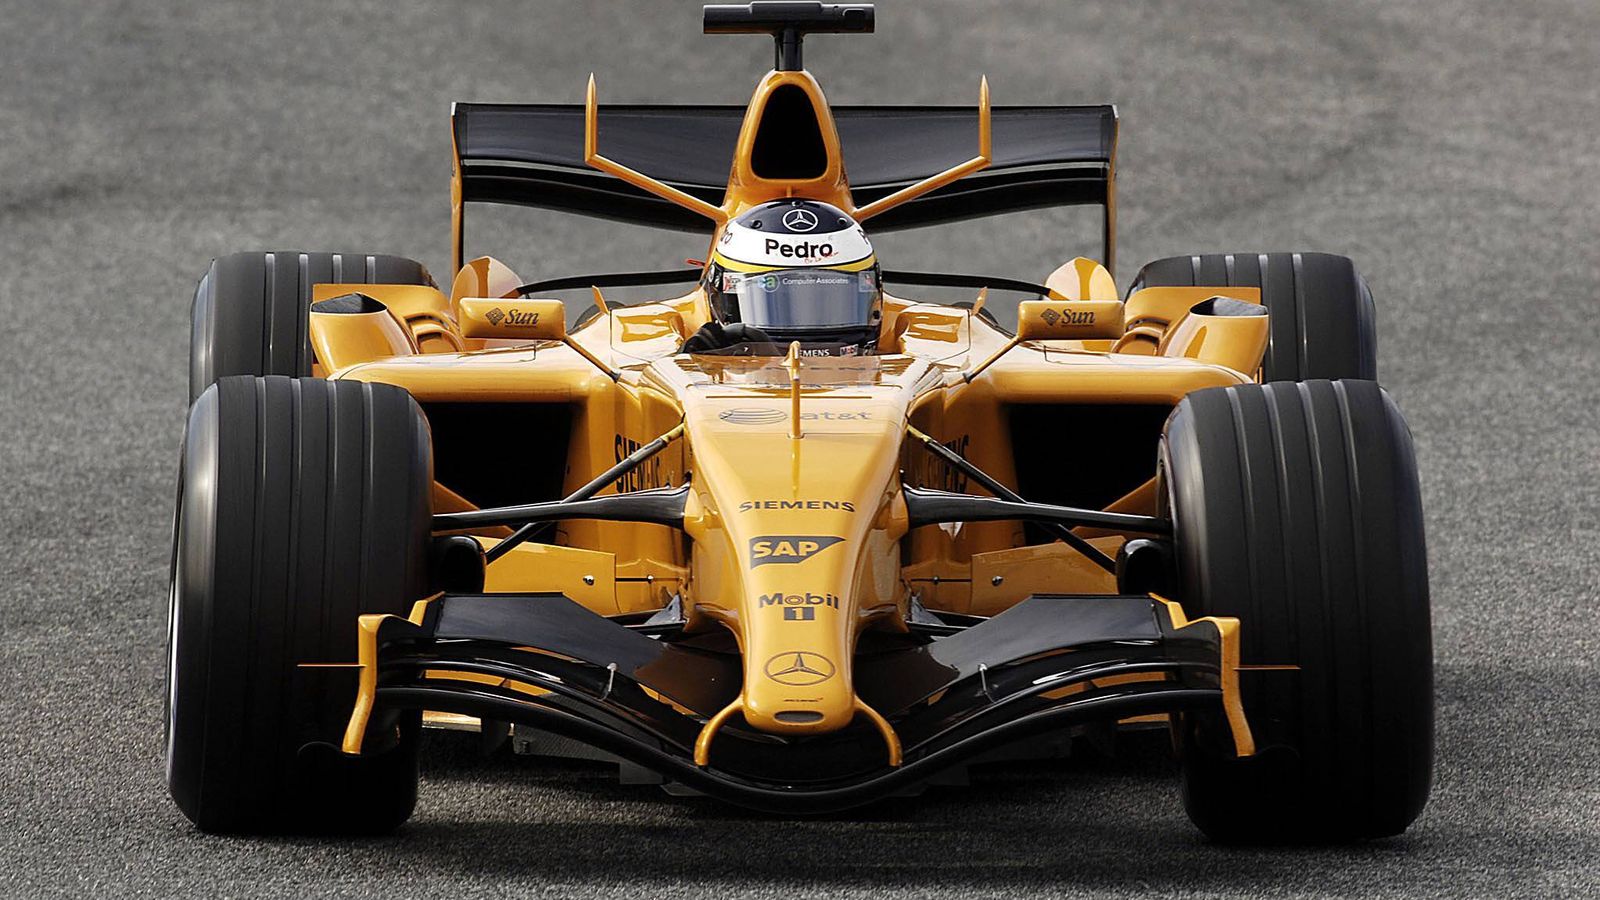 Foto: La última vez que el McLaren se vistió de naranja fue en unos test en Jerez en el año 2006. Pedro Martínez de la Rosa condujo el monoplaza (Imago)